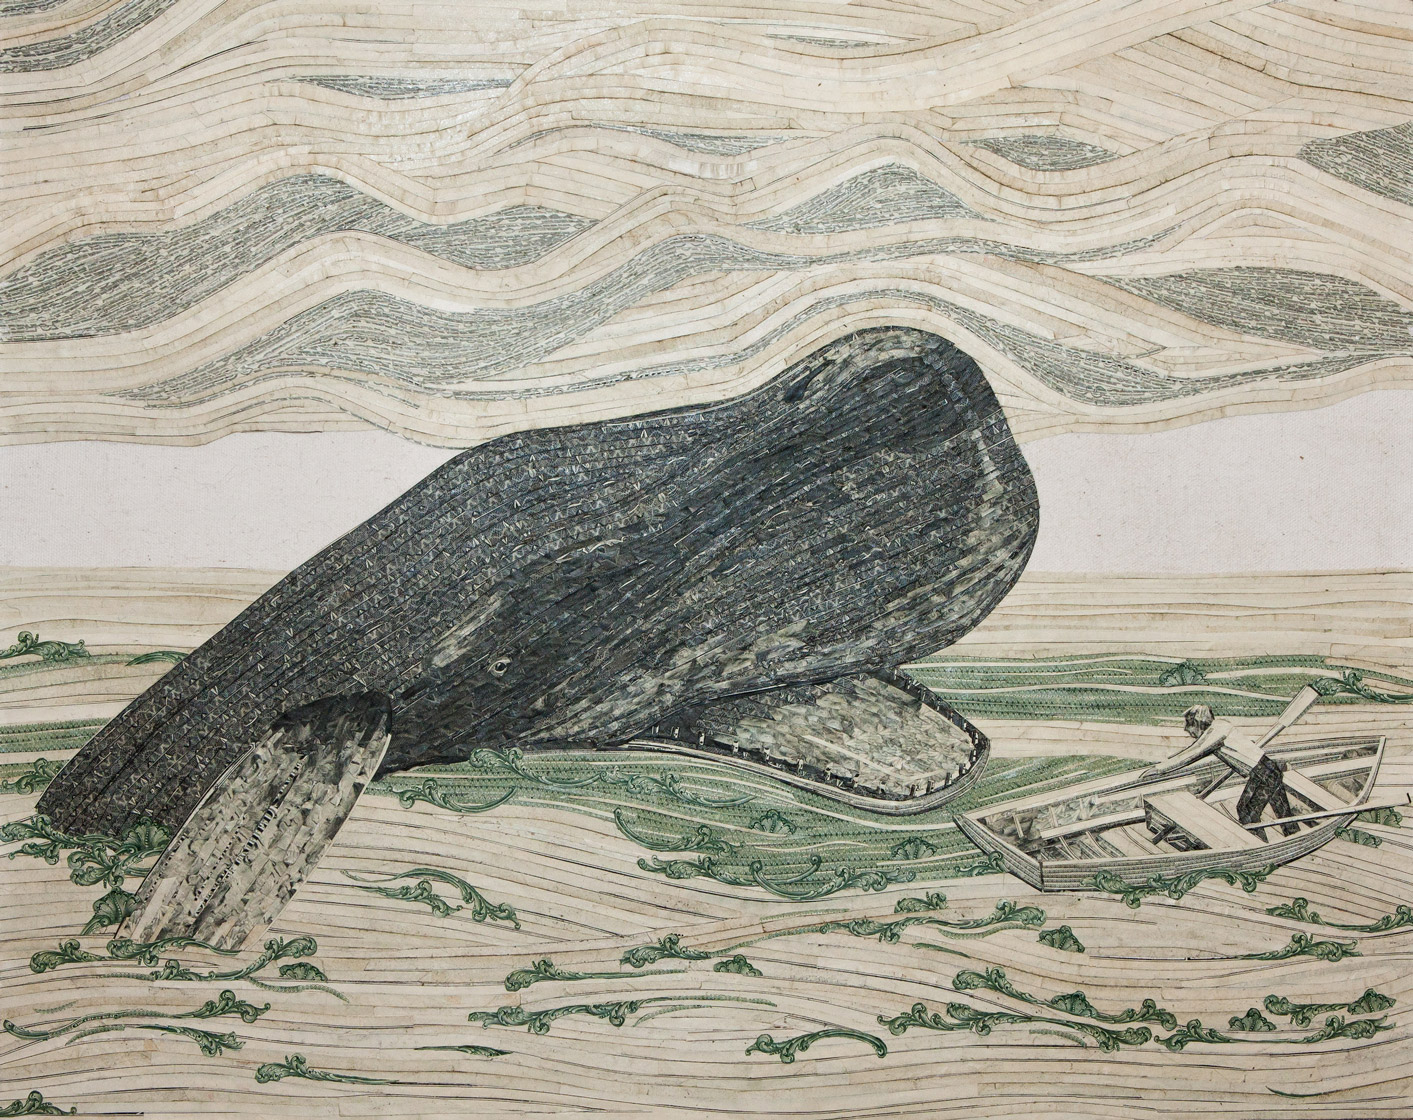 Лось кит. Самый дорогой рисунок в истории человечества.